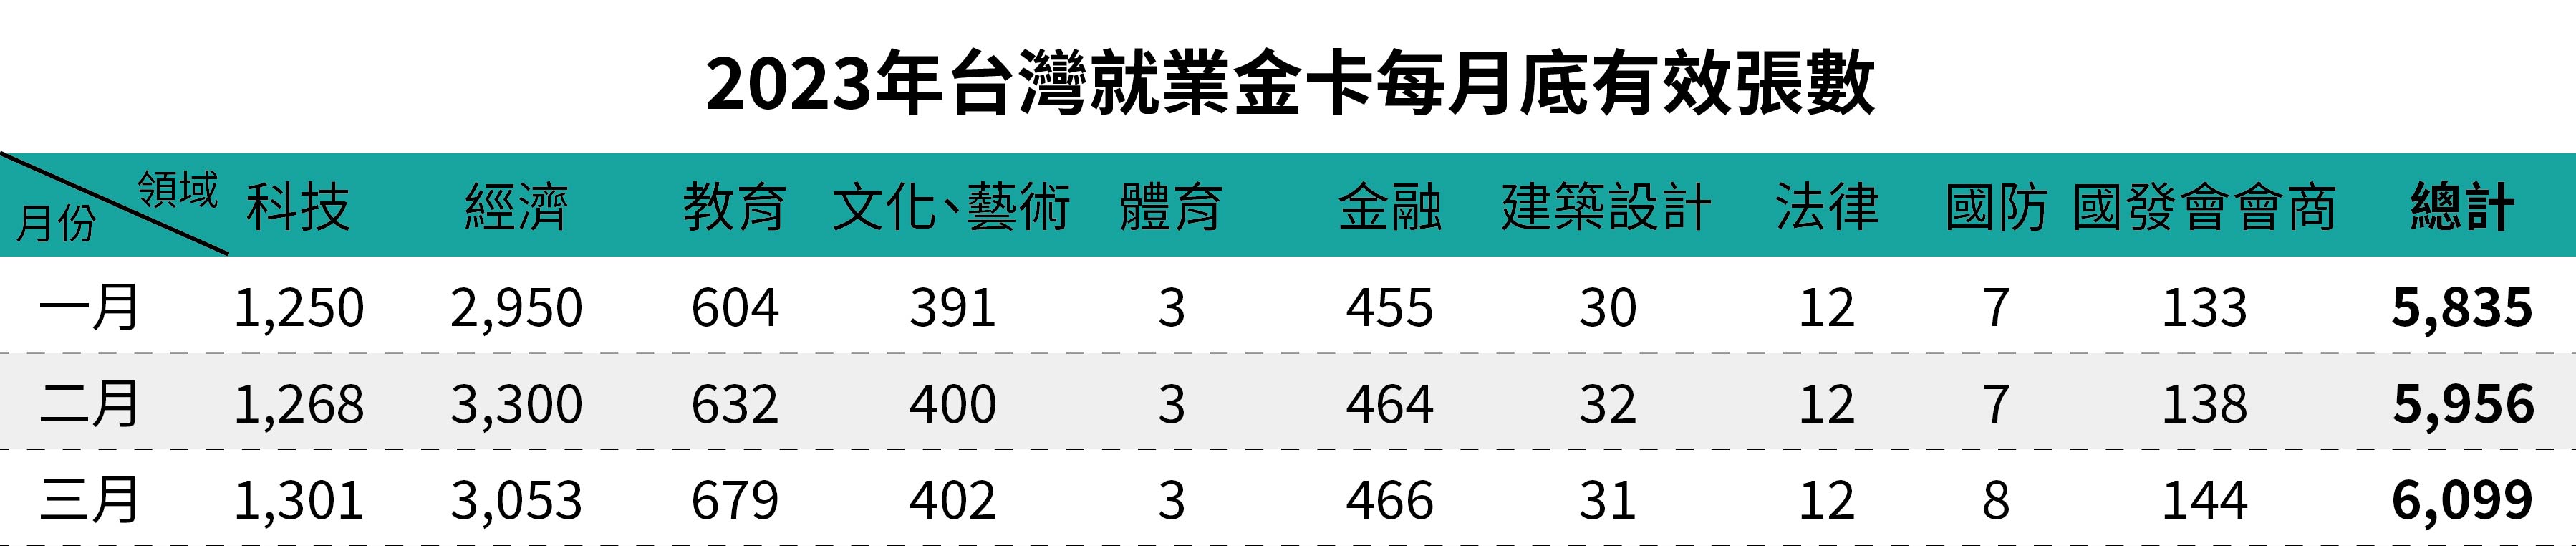 2023年台灣就業金卡每月底有效張數-三月